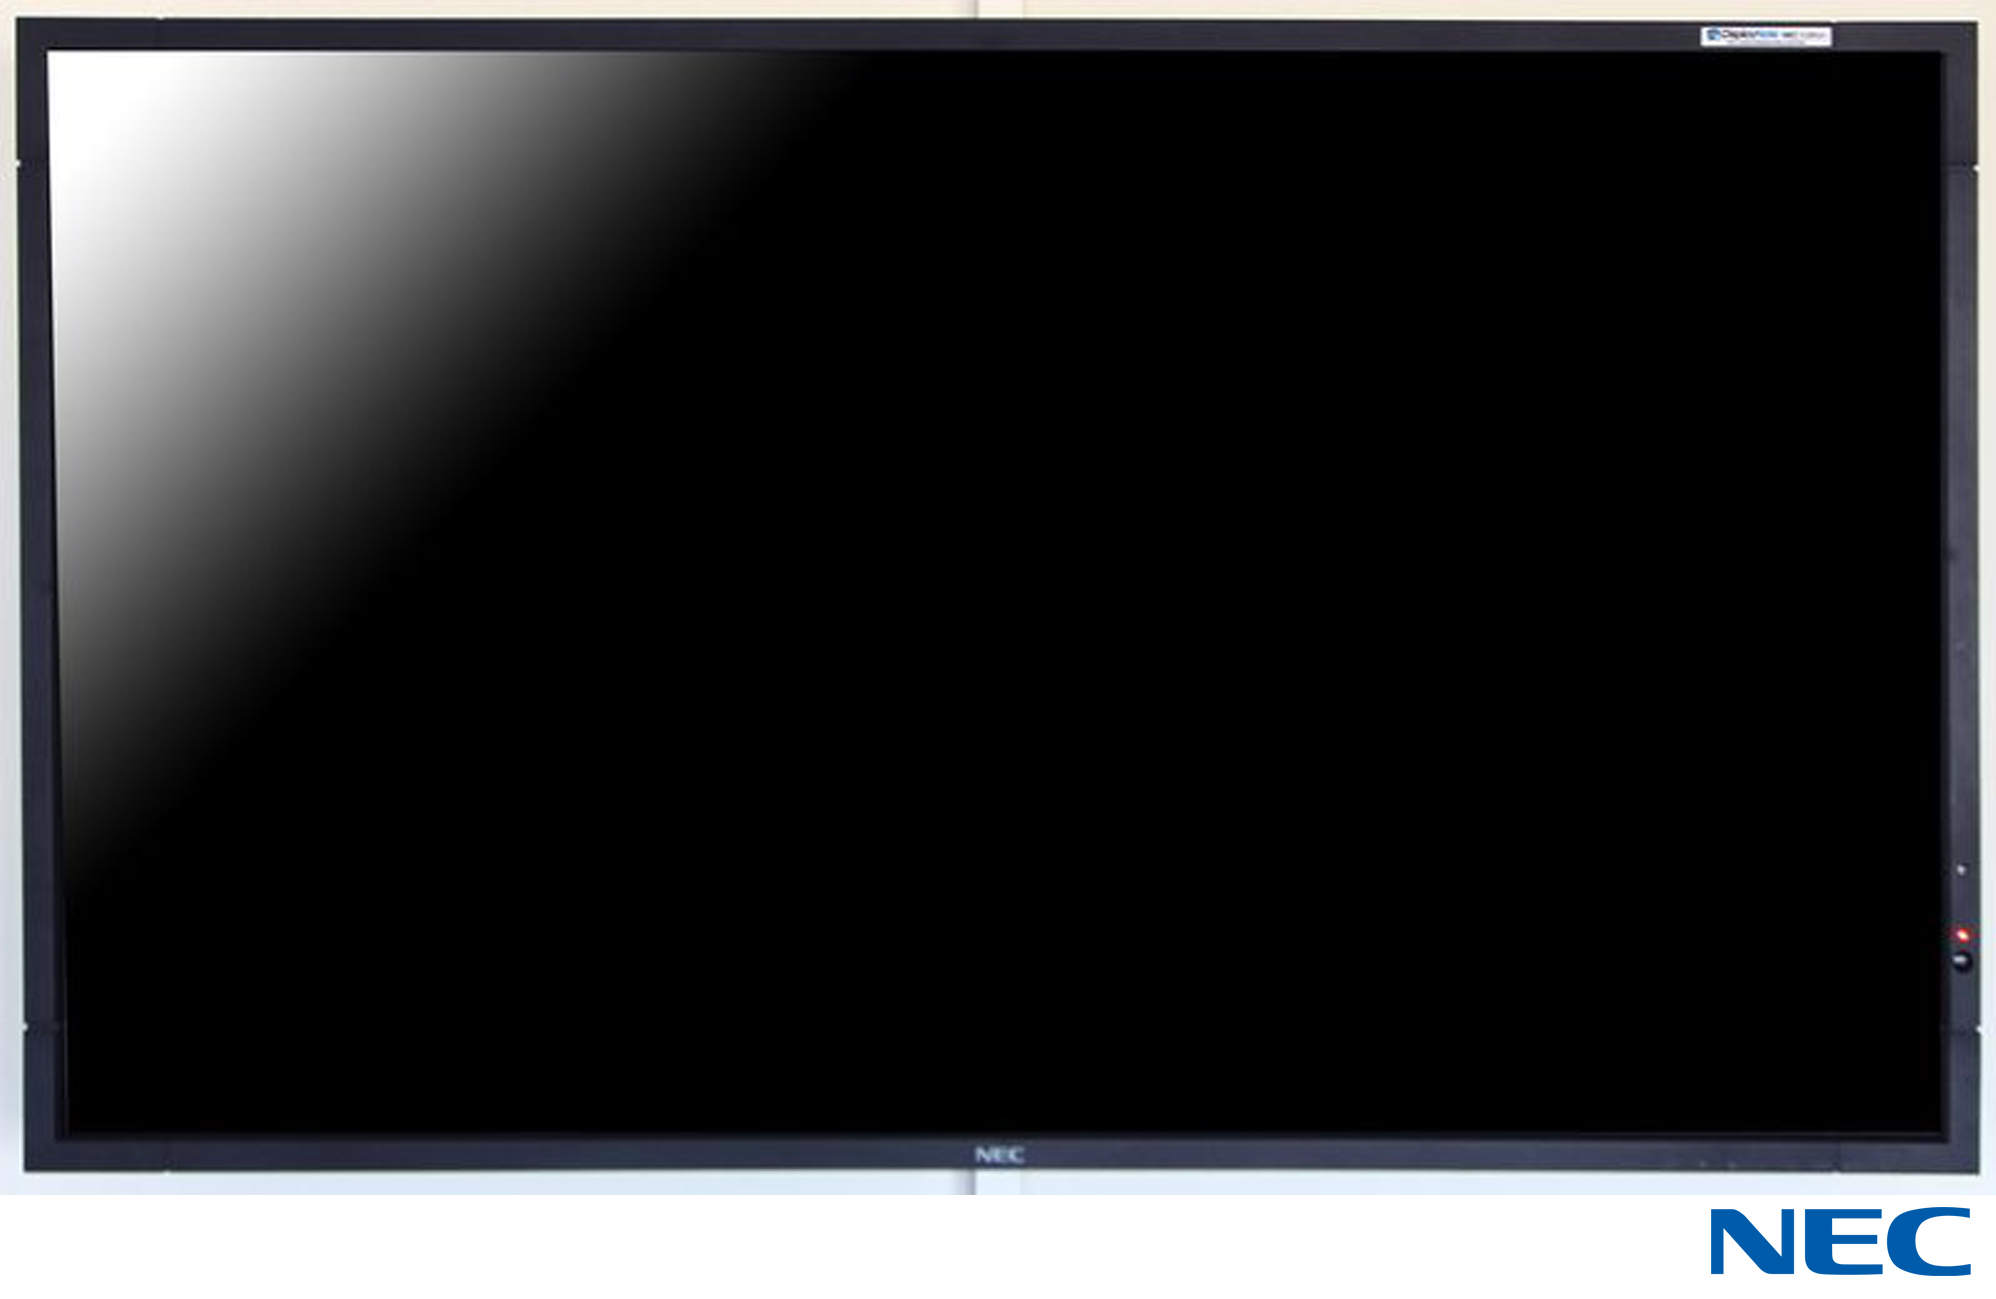 MONITEUR A ECRAN LCD DE 42 POUCES DE MARQUE NEC MODELE V423  VENDUS AVEC SA TELECOMMANDE ET SON SUPPORT MURAL. R4.1